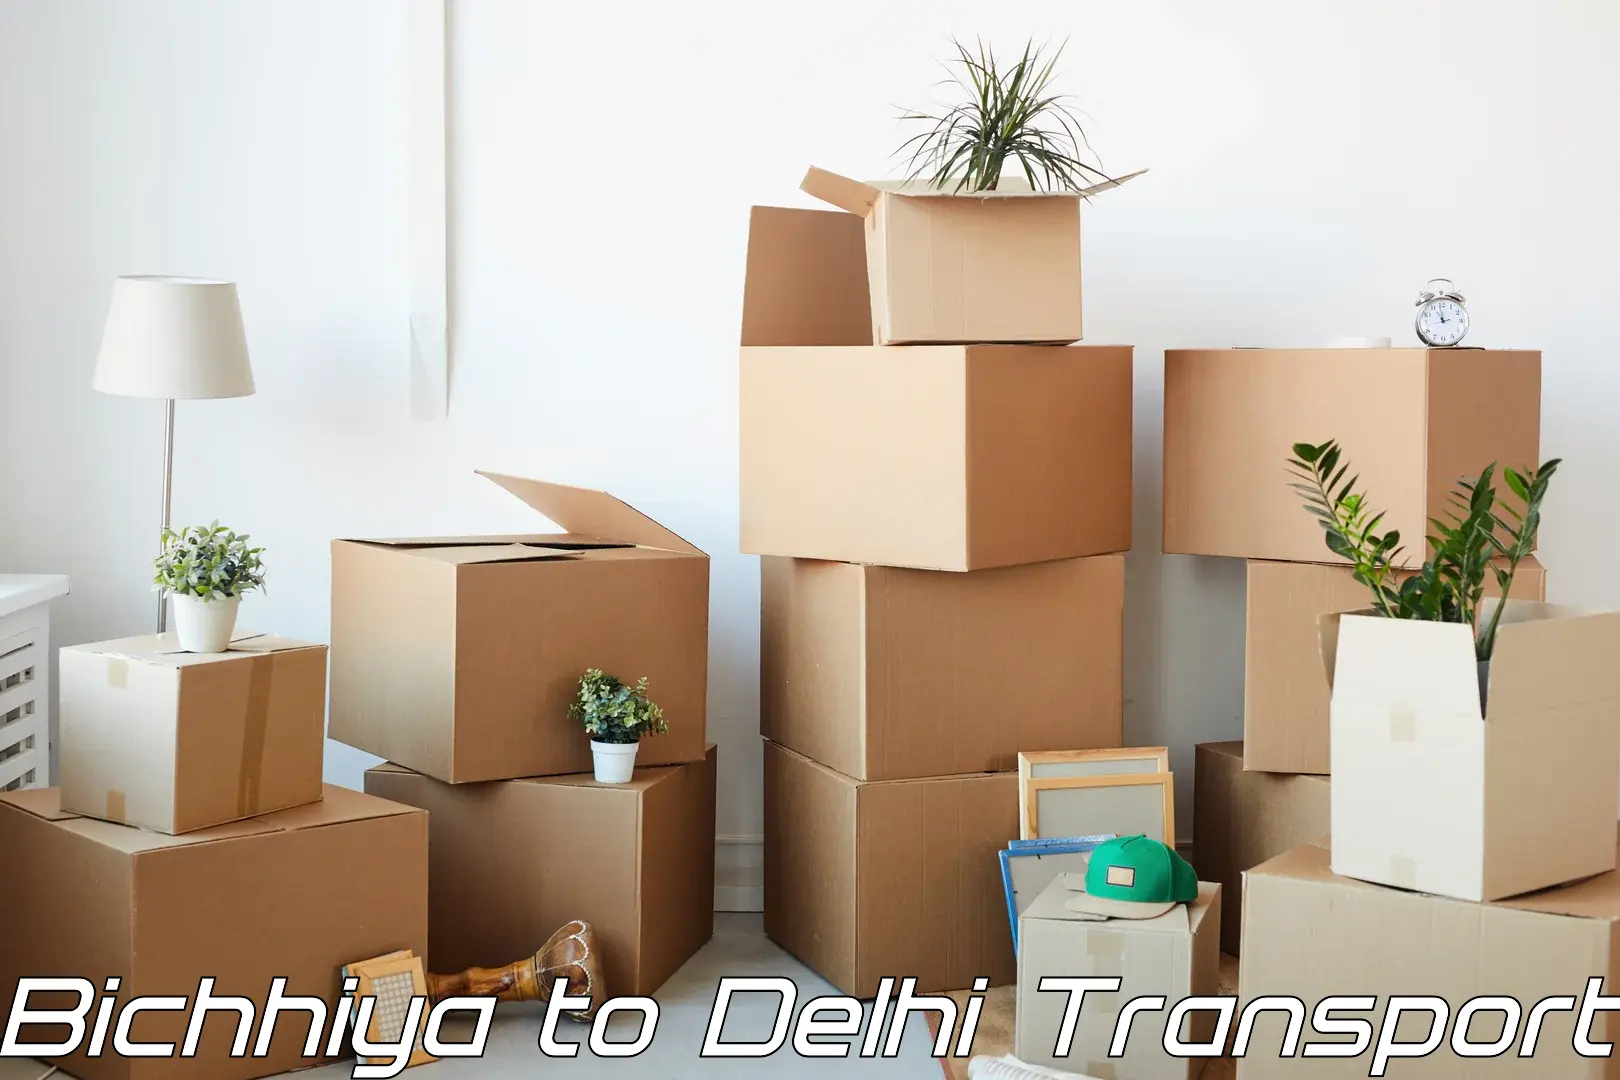 Domestic transport services Bichhiya to University of Delhi